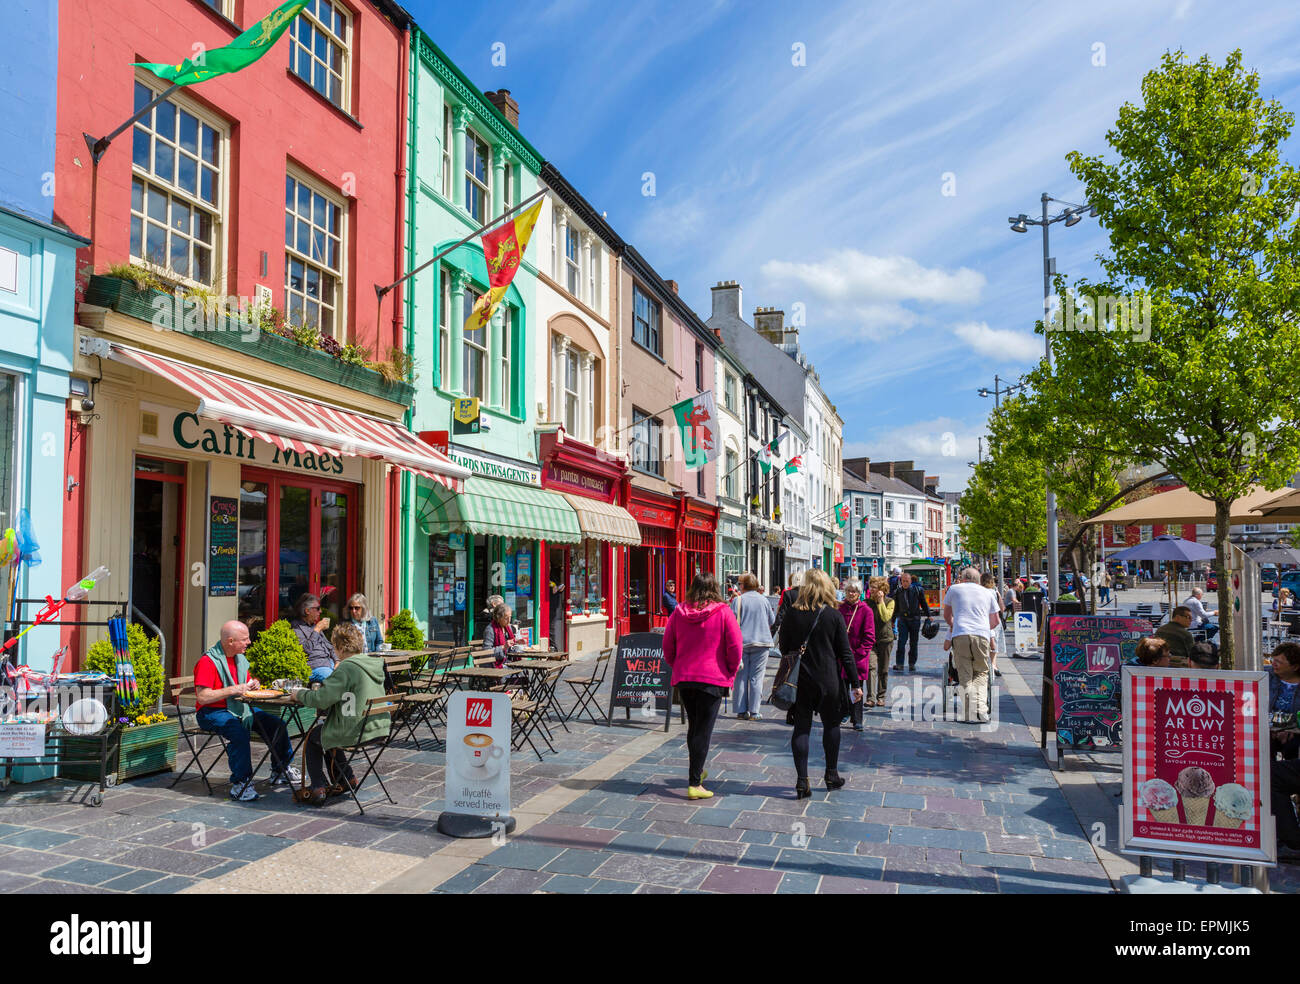 Negozi, pub e caffetterie sulla piazza del Castello, Caernarfon, Gwynedd, Wales, Regno Unito Foto Stock